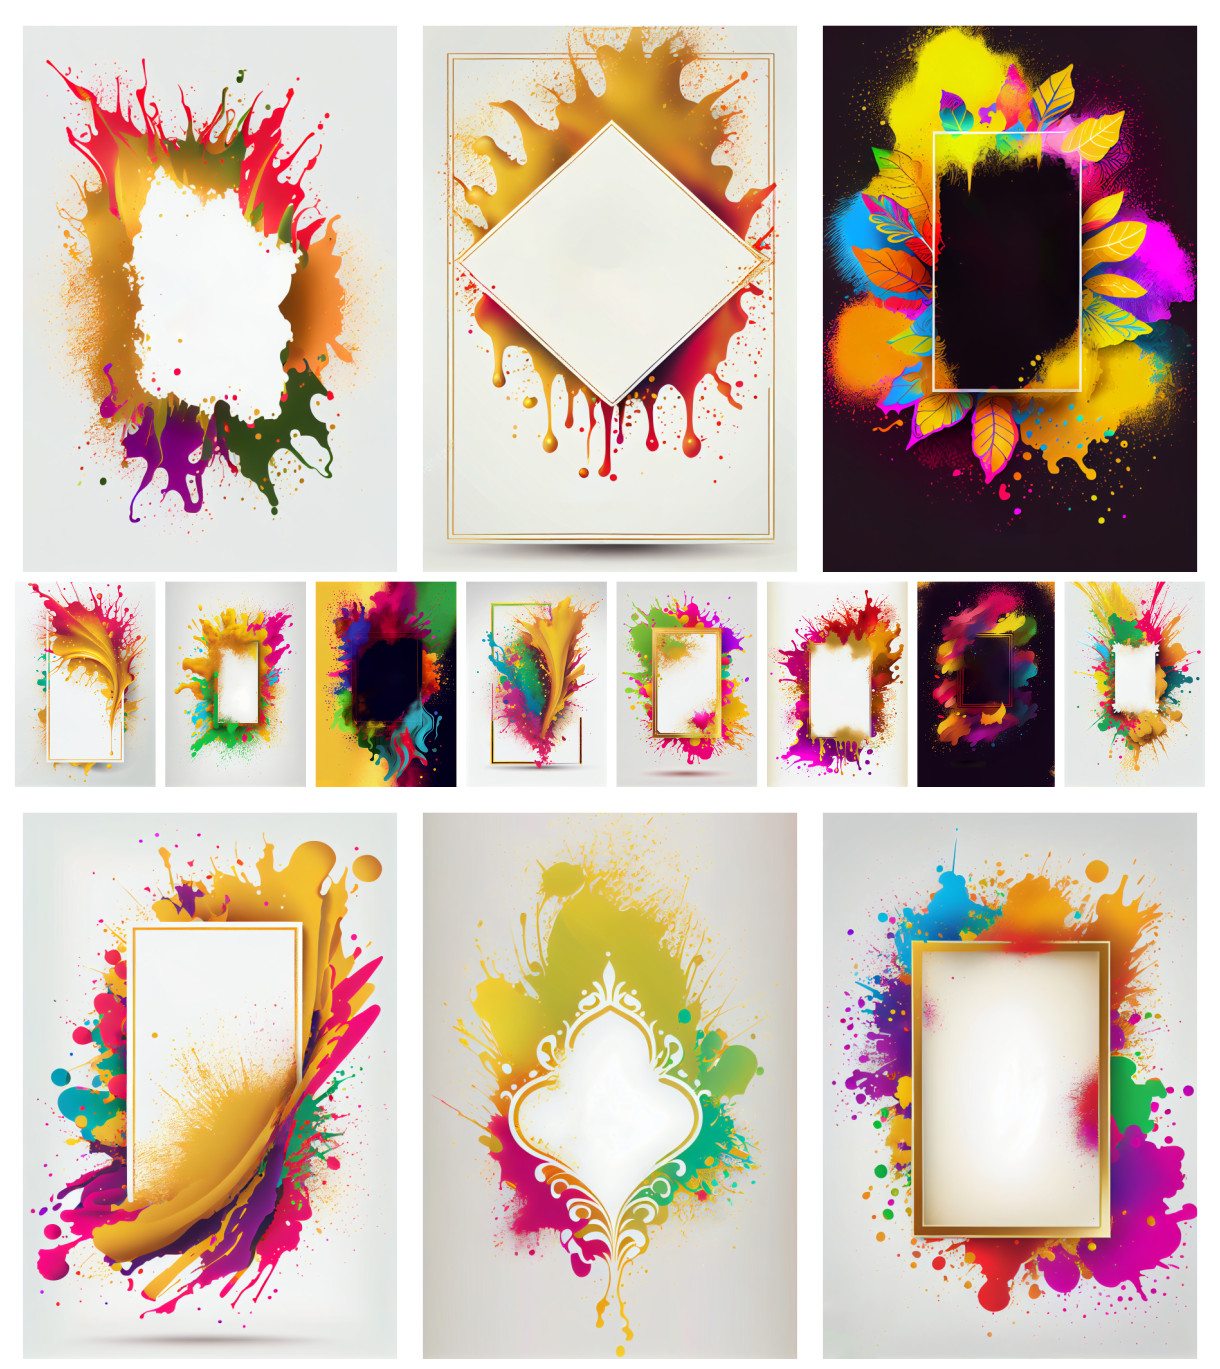 Colorful Holi Frame Splashes: Framing the Festivals Vibrancy